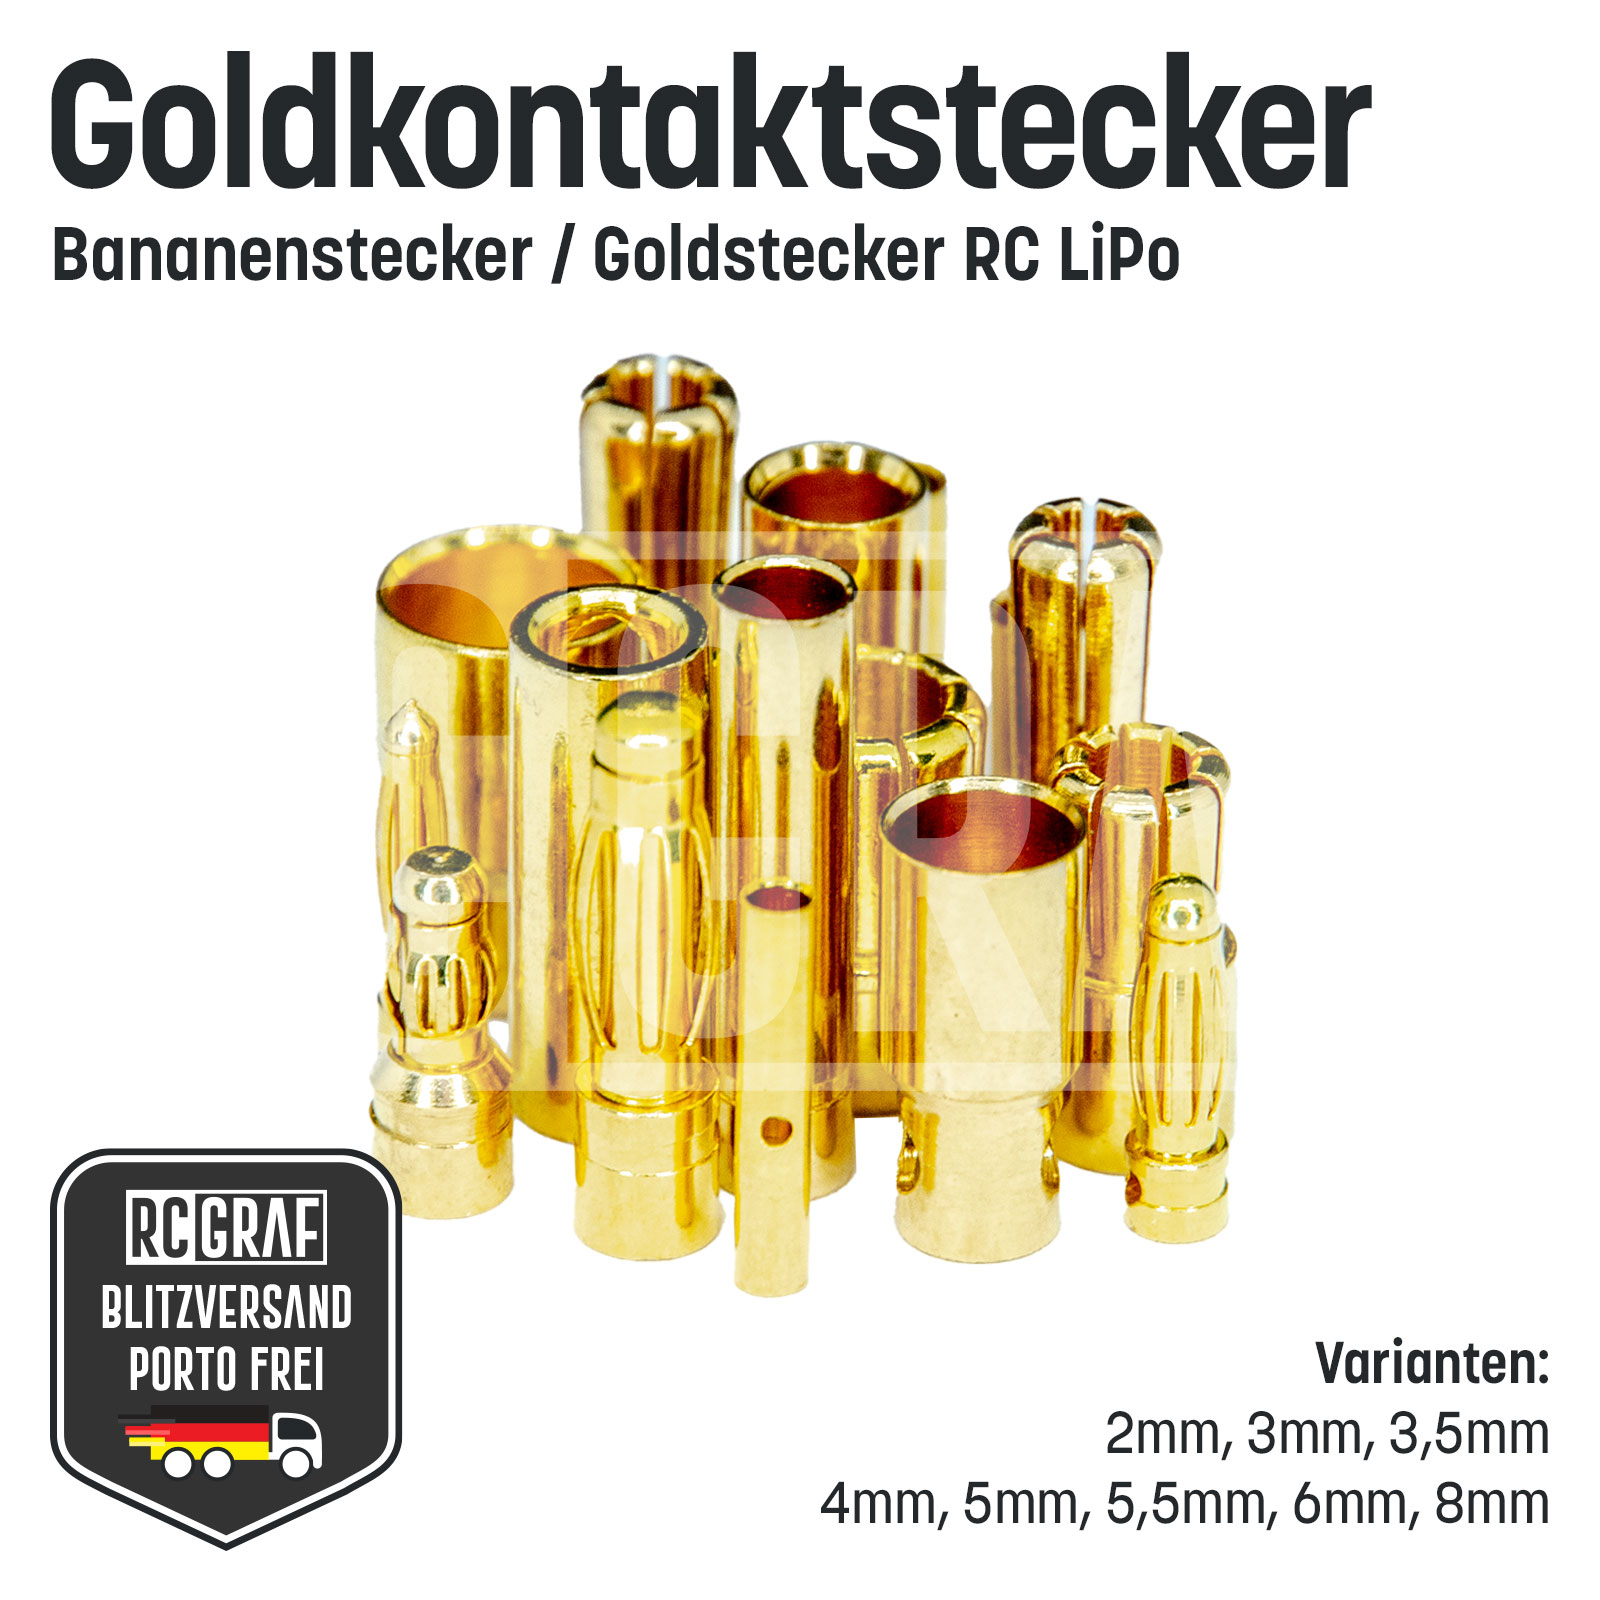 Goldkontaktstecker Stecker Buchse Bananenstecker Lipo Akku 2mm 3mm 3,5mm 4mm 5mm 5,5mm 6mm 8mm